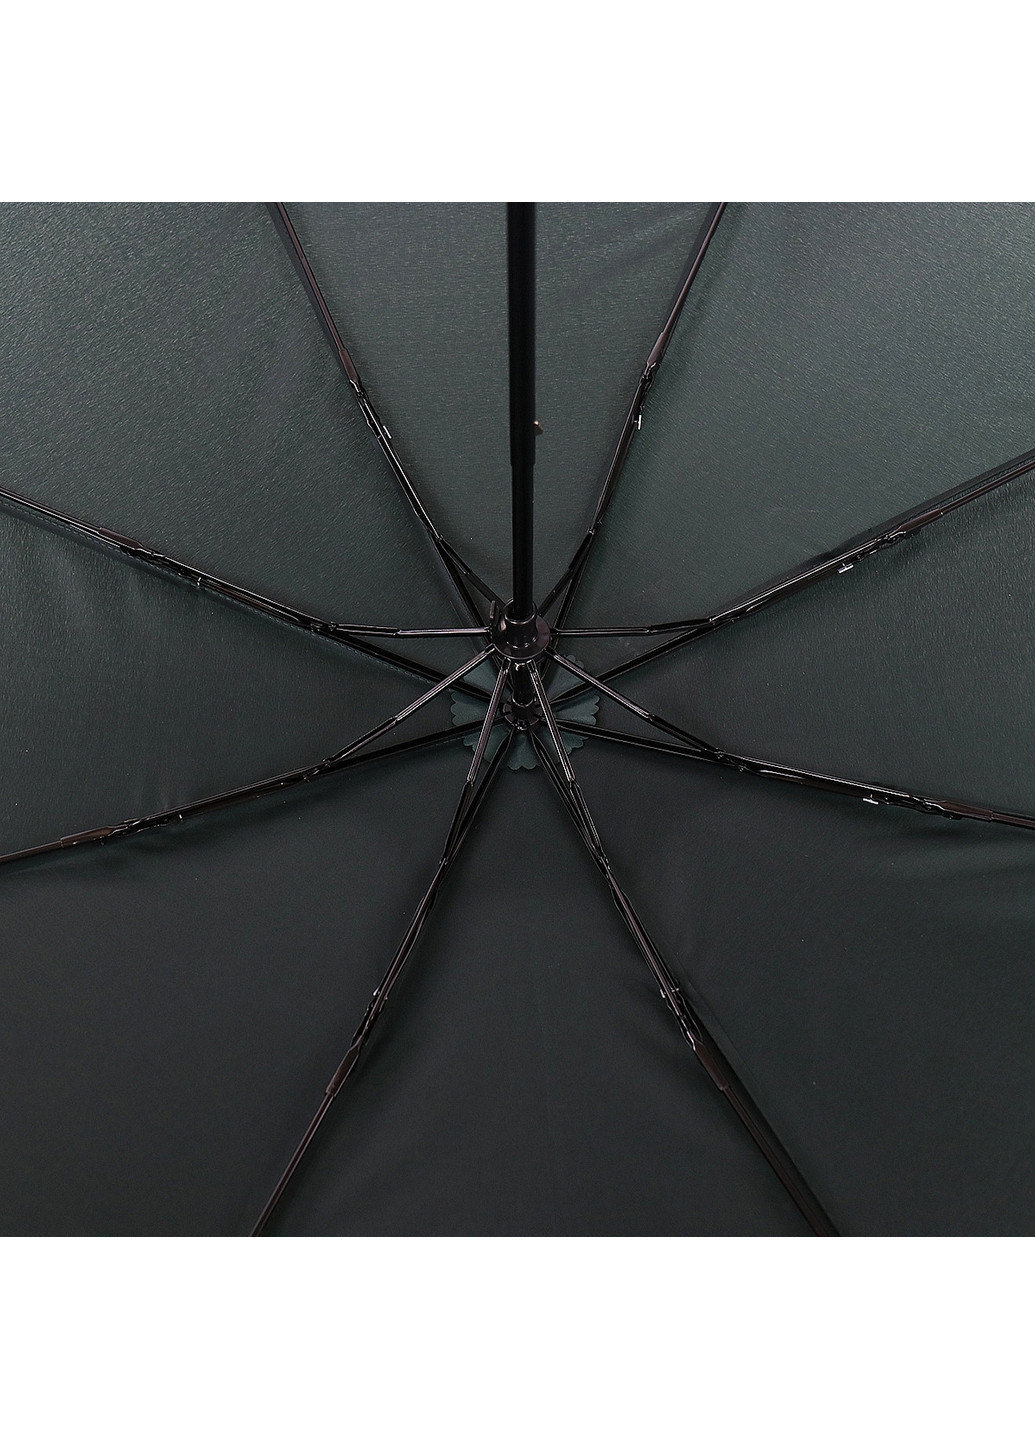 Женский складной зонт механический 99 см ArtRain (255709962)